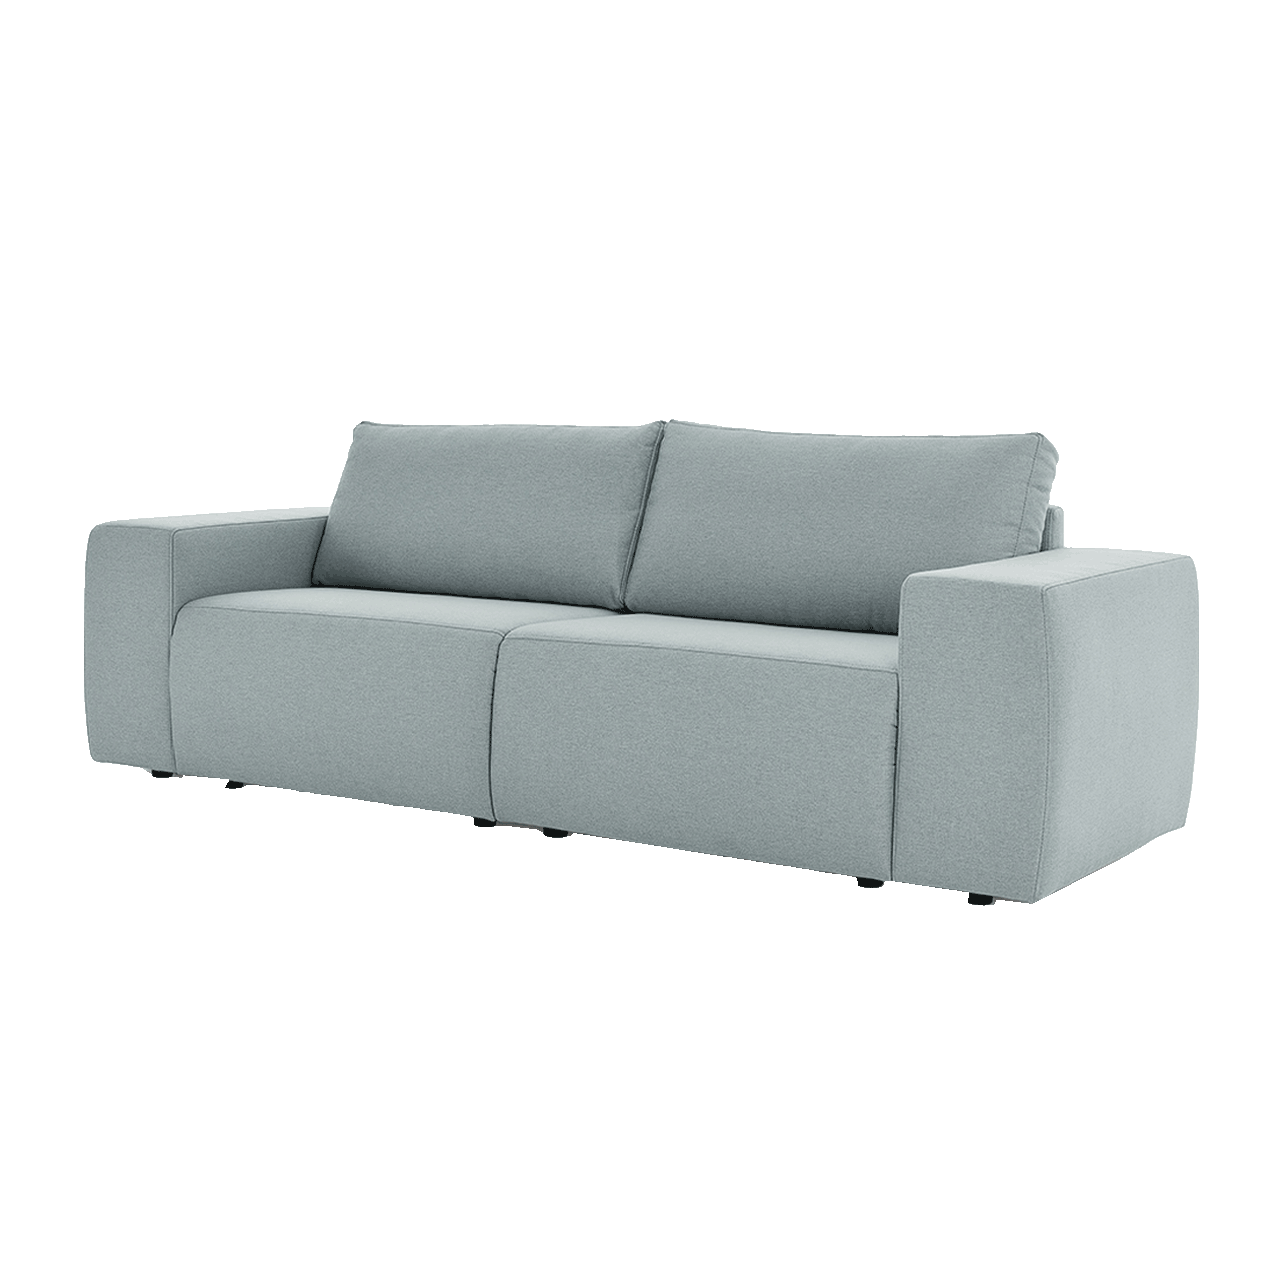 LOOKS Sofa by Joop